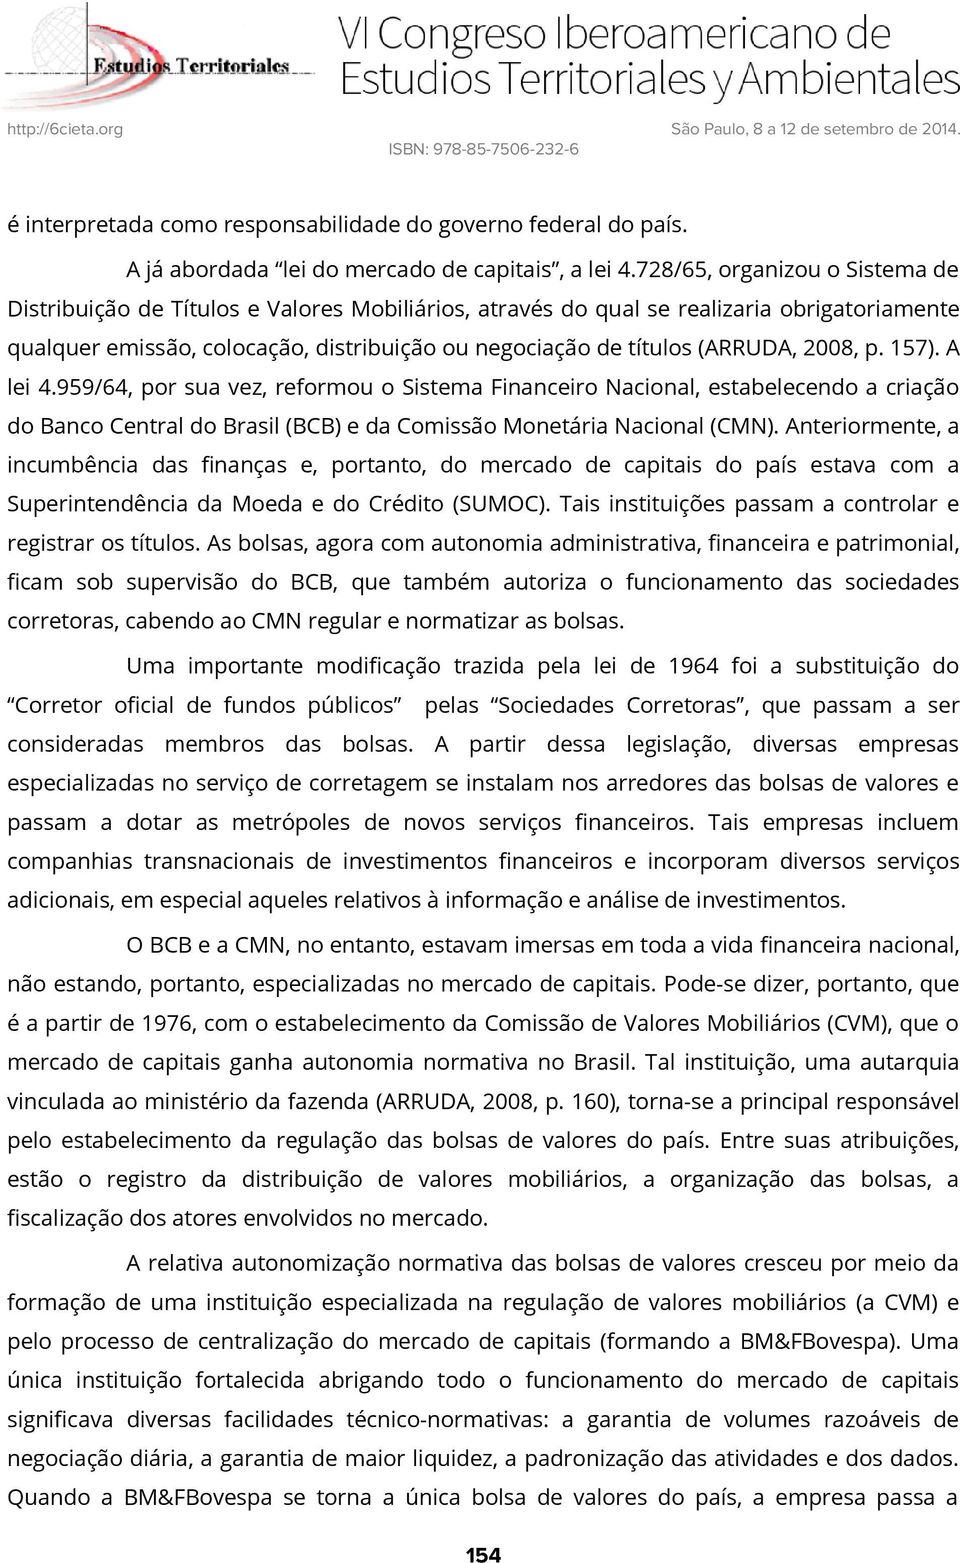 (ARRUDA, 2008, p. 157). A lei 4.959/64, por sua vez, reformou o Sistema Financeiro Nacional, estabelecendo a criação do Banco Central do Brasil (BCB) e da Comissão Monetária Nacional (CMN).